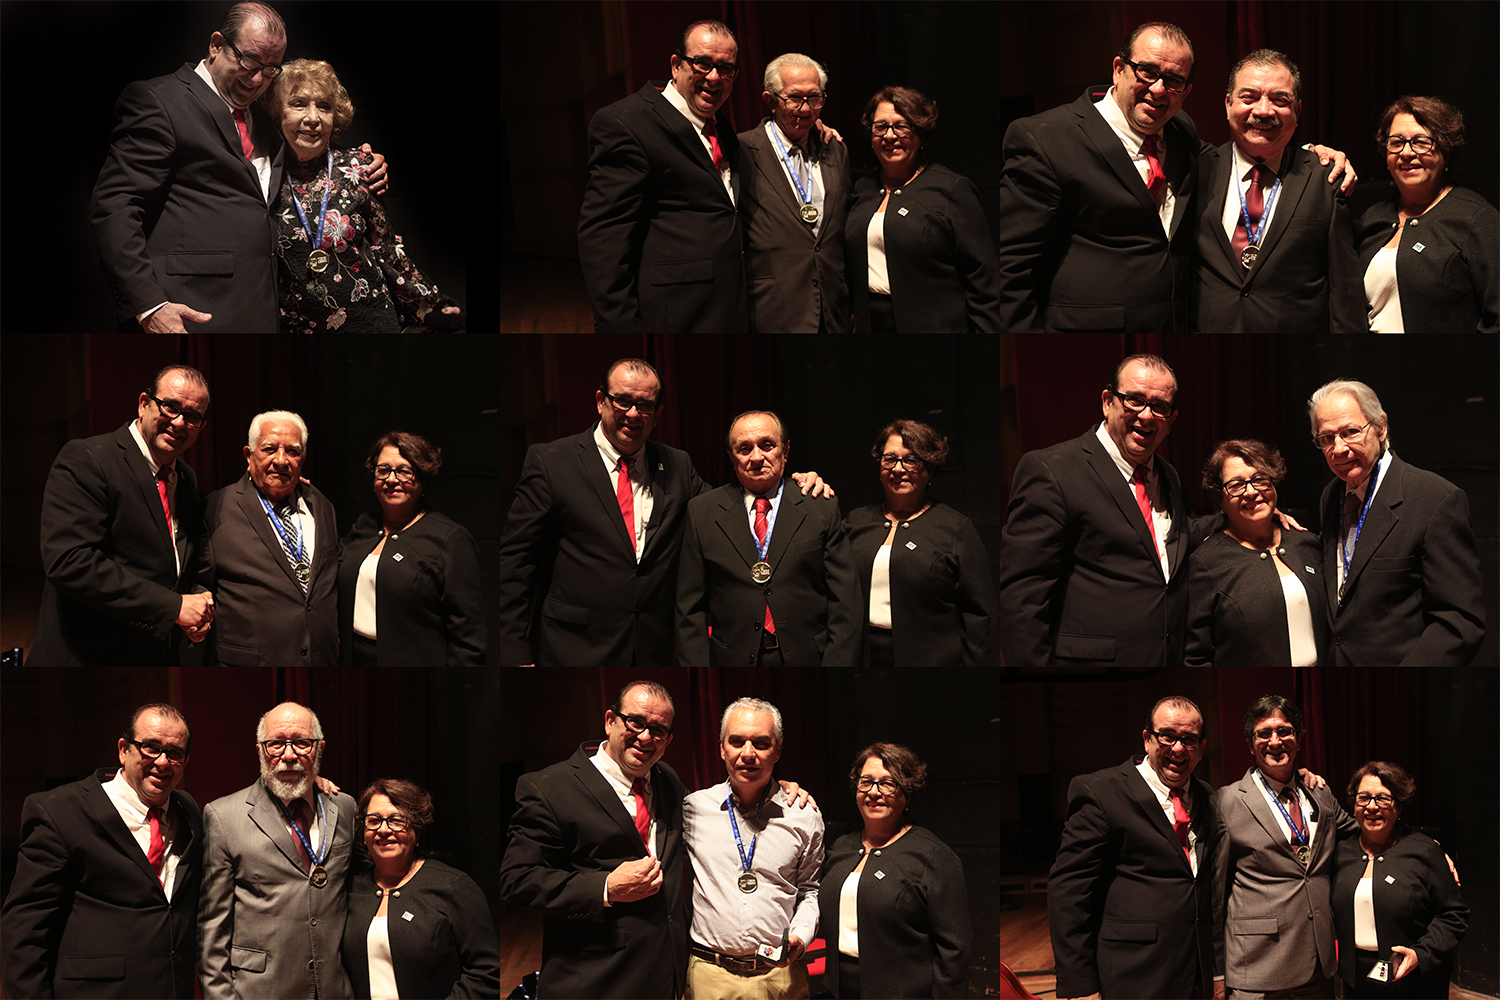 31 nomes receberam medalha por terem contribuído para a construção da universidade. (fotos: Adilson Andrade/Ascom-UFS)